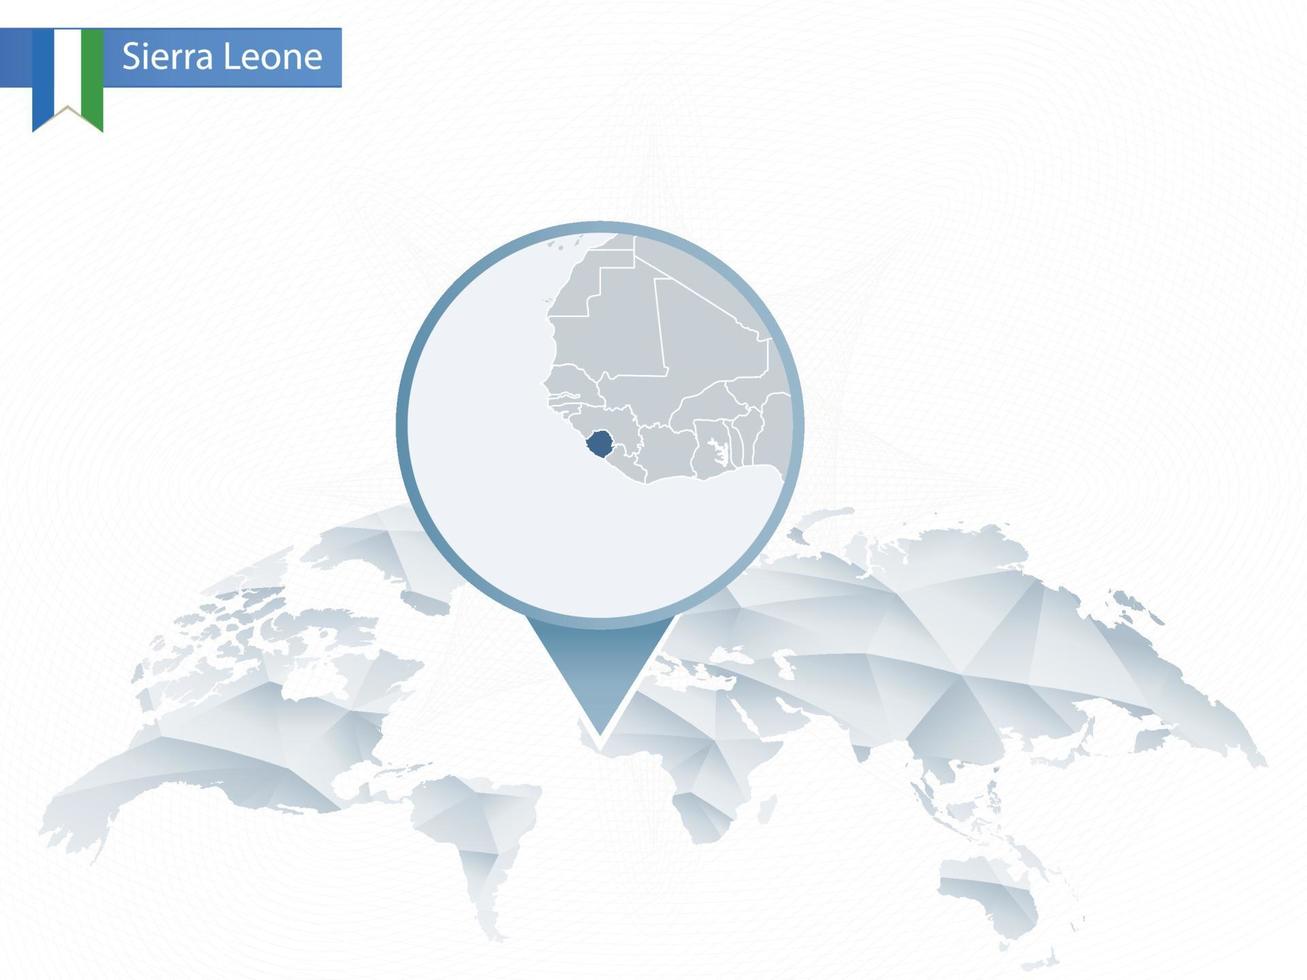 mapa del mundo redondeado abstracto con mapa detallado de sierra leona anclado. vector